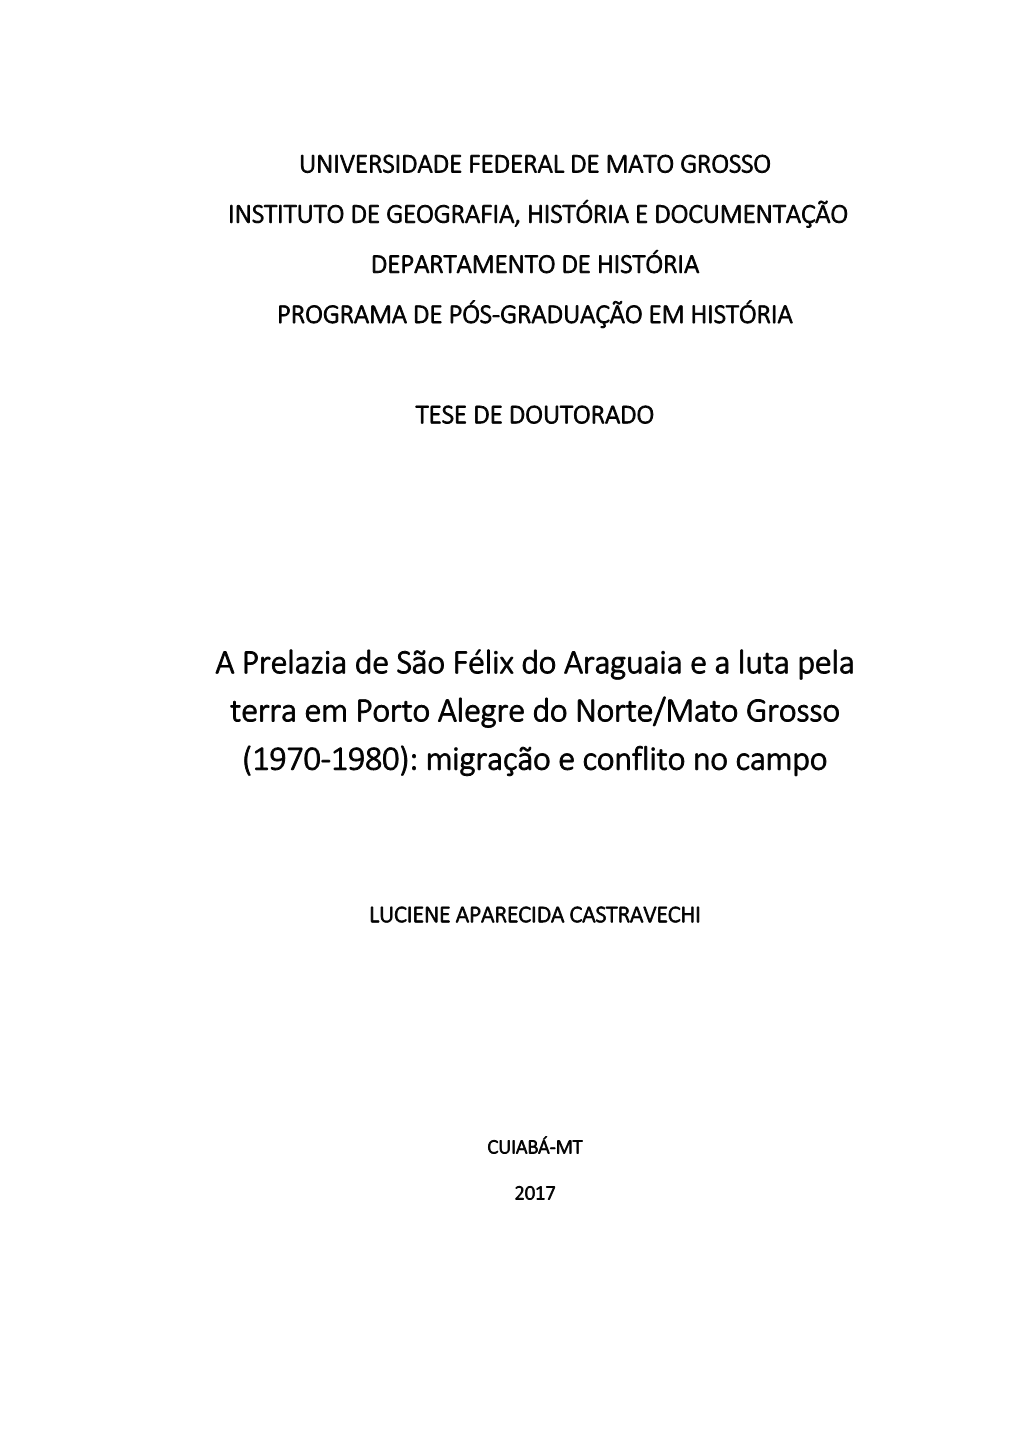 A Prelazia De São Félix Do Araguaia E a Luta Pela Terra Em Porto Alegre Do Norte/Mato Grosso (1970-1980): Migração E Conflito No Campo